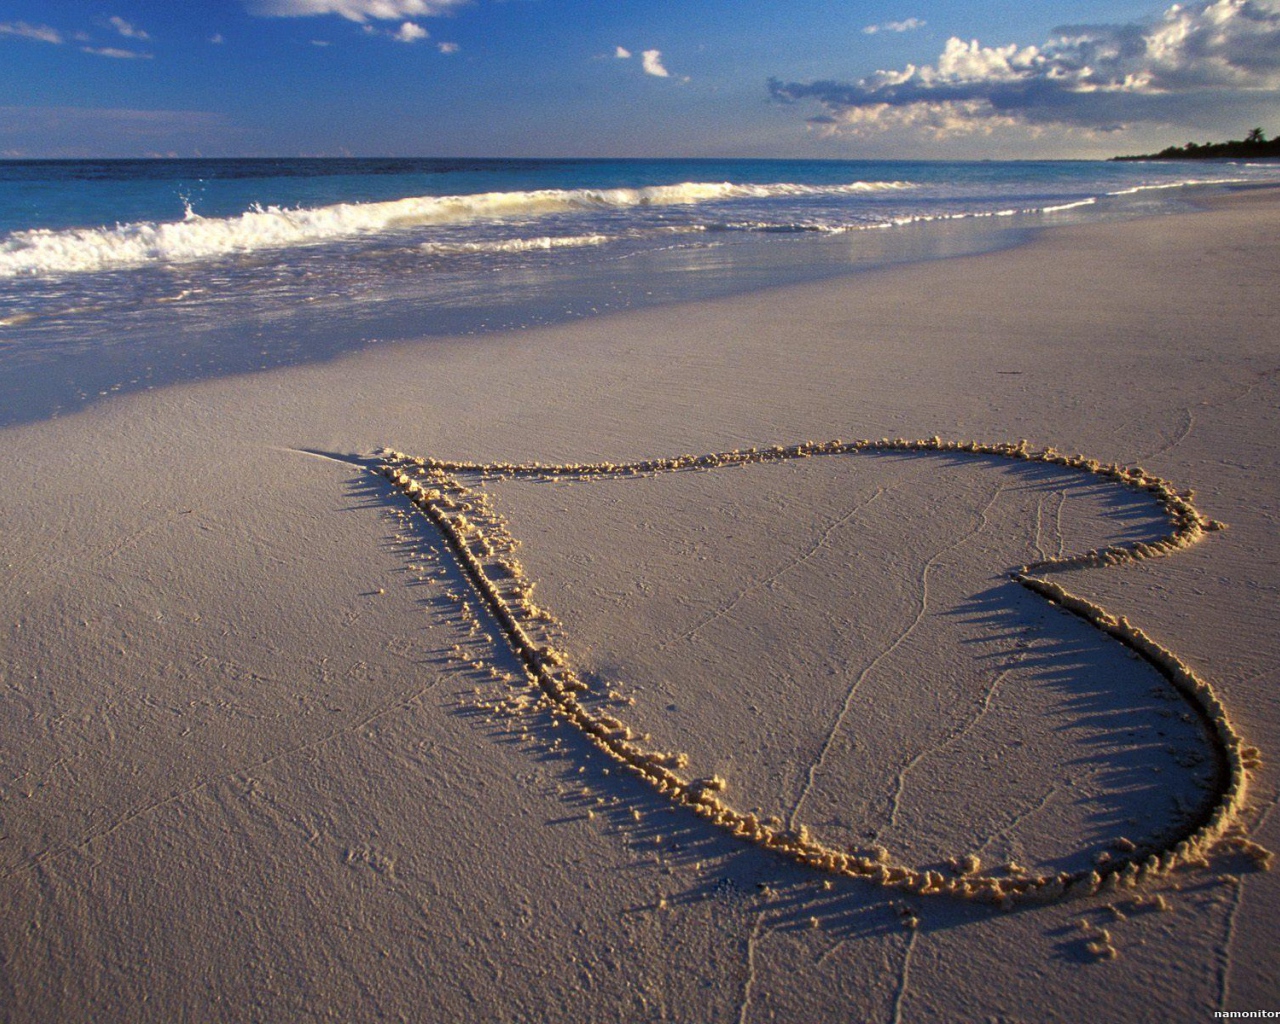 Сердце на песке на День Влюбленных 14 февраля